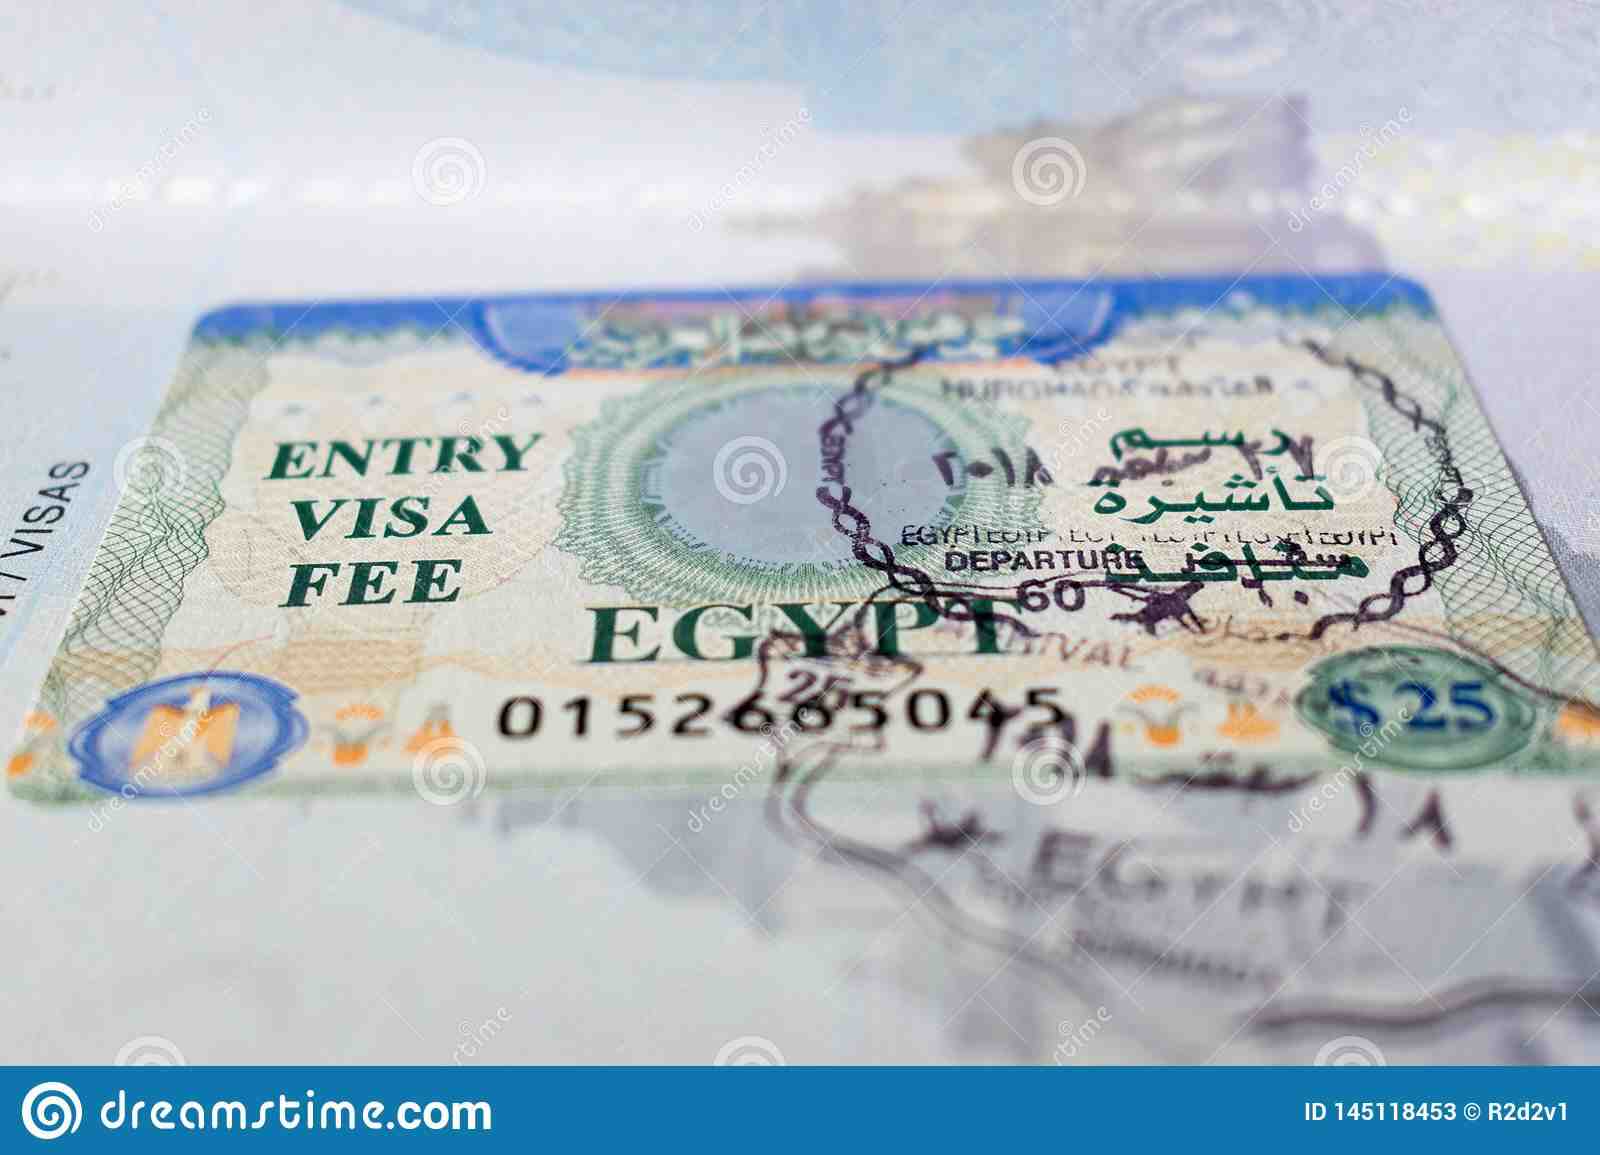 Comment obtenir un visa pour aller en Égypte ?